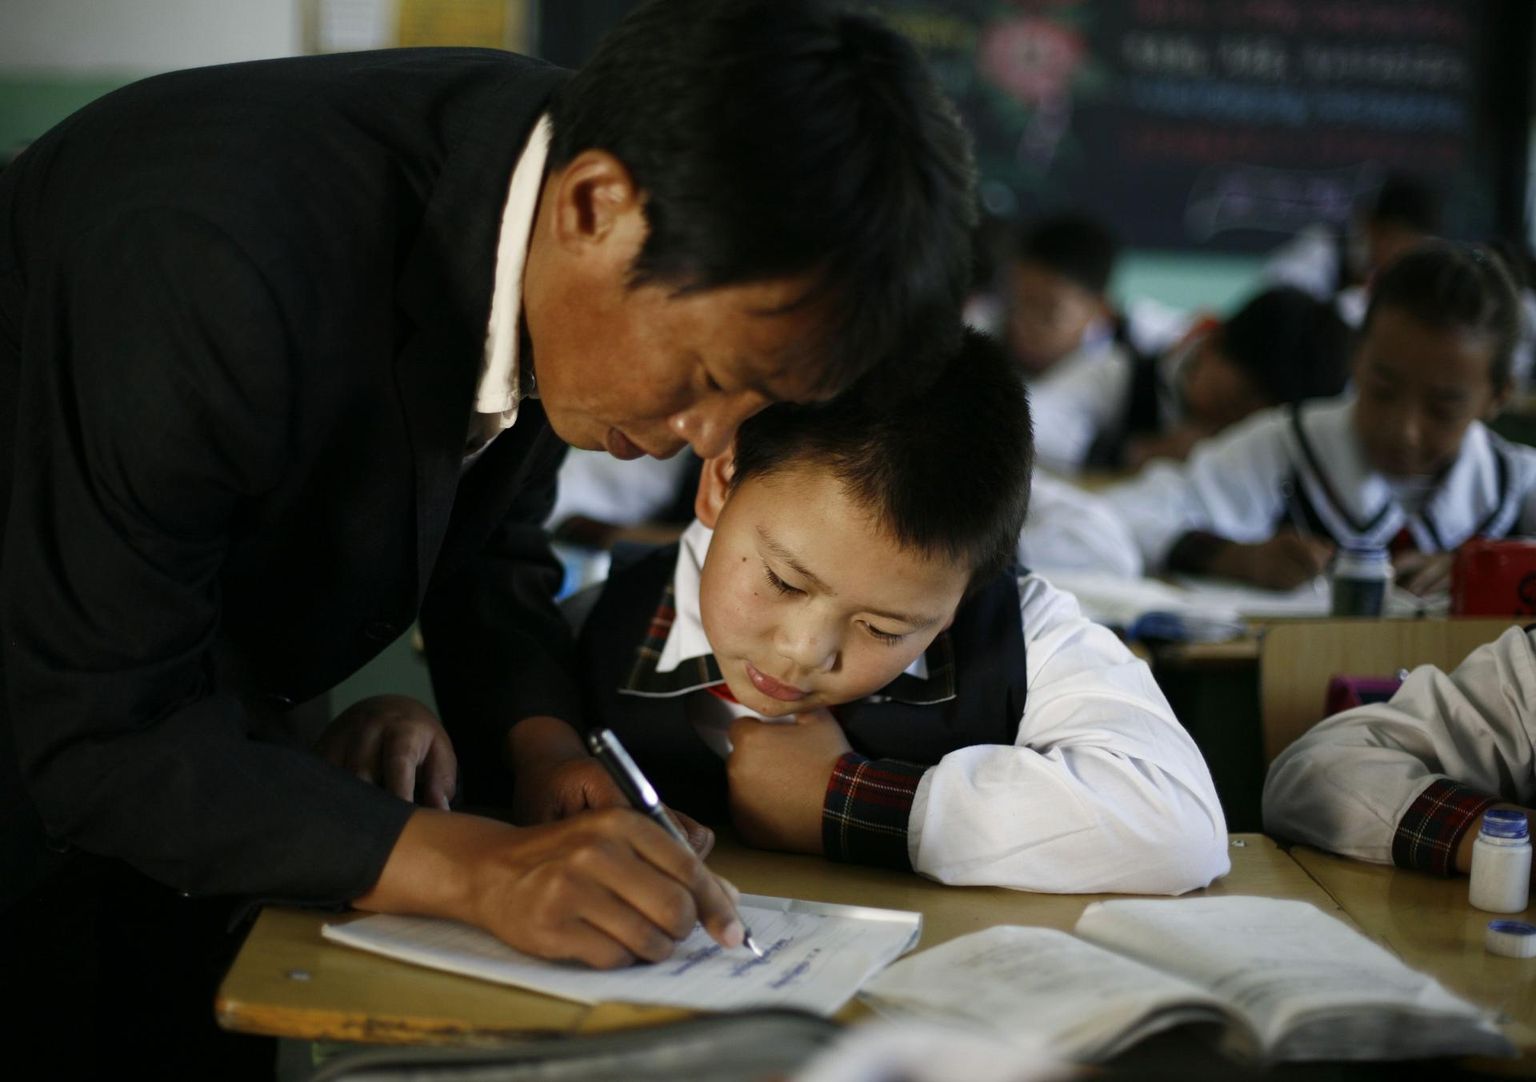 Hiinas suhtutakse õpetajasse suure lugupidamisega. 